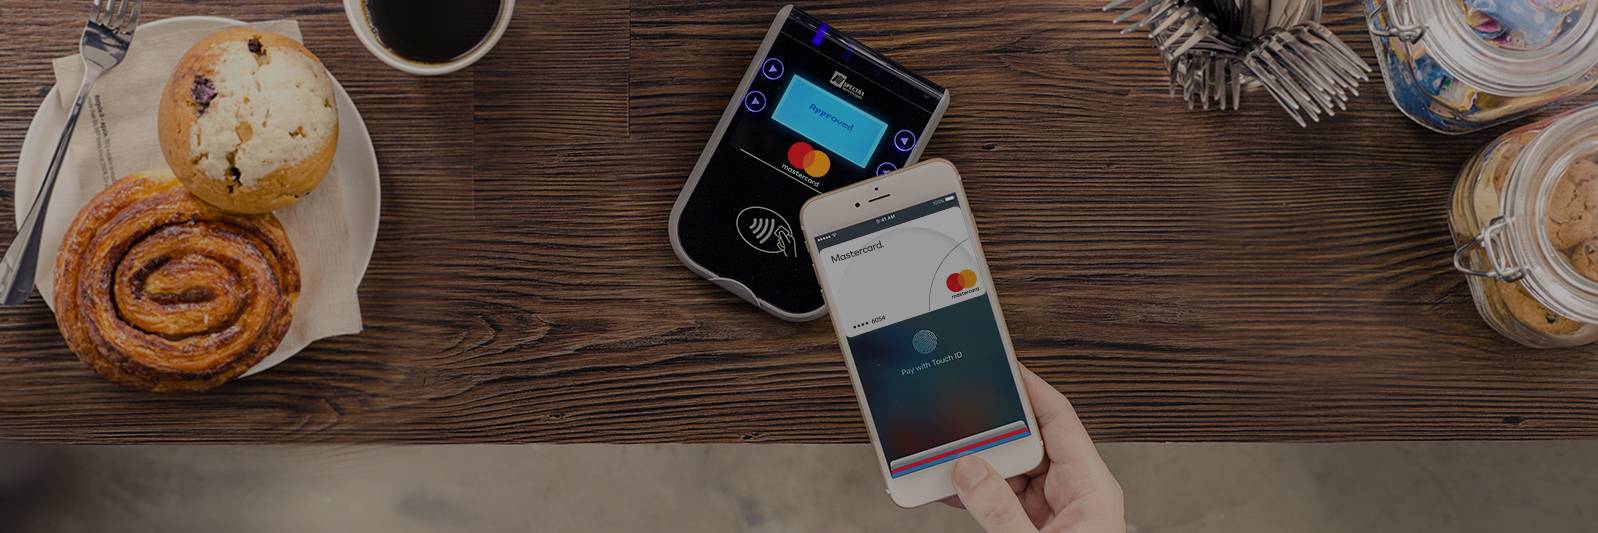 Novi digitalni novčanici dostupni korisnicima Mastercard kartica